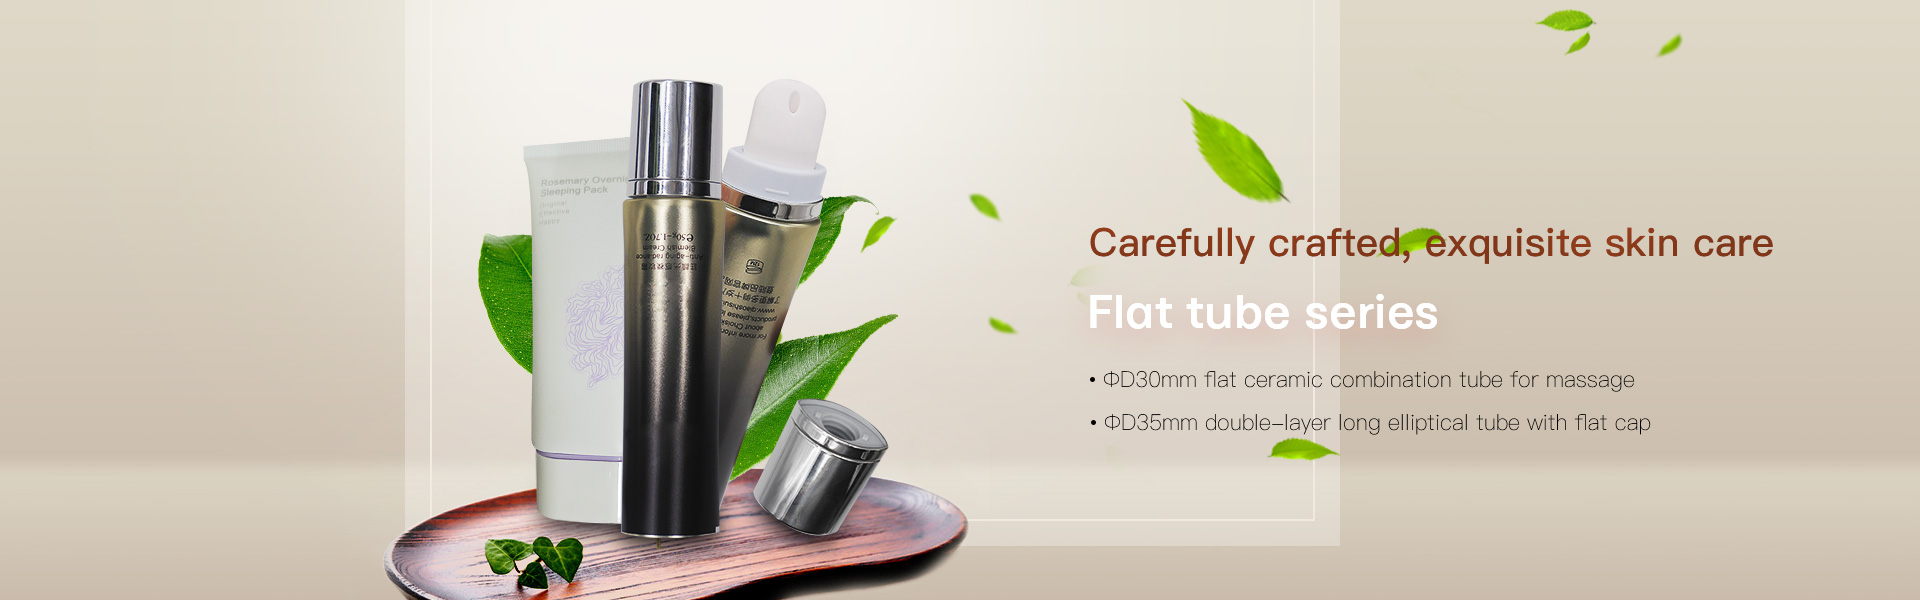 Flat tube